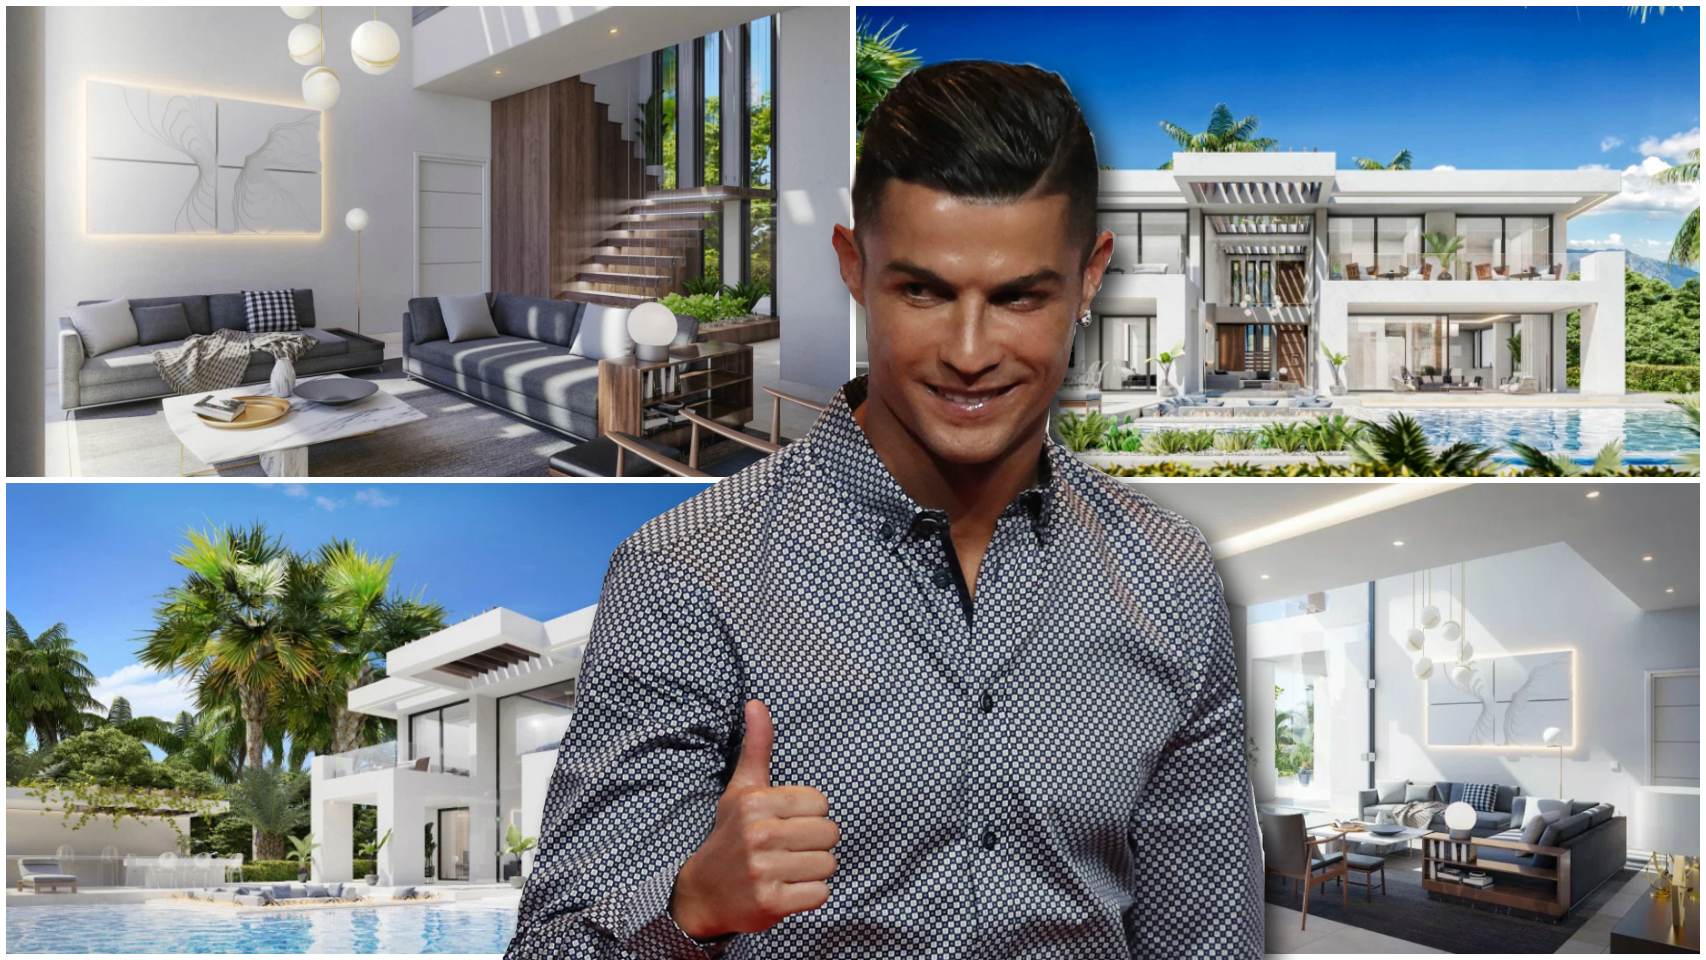 Montaje de Cristiano Ronaldo con algunas imágenes de la casa.